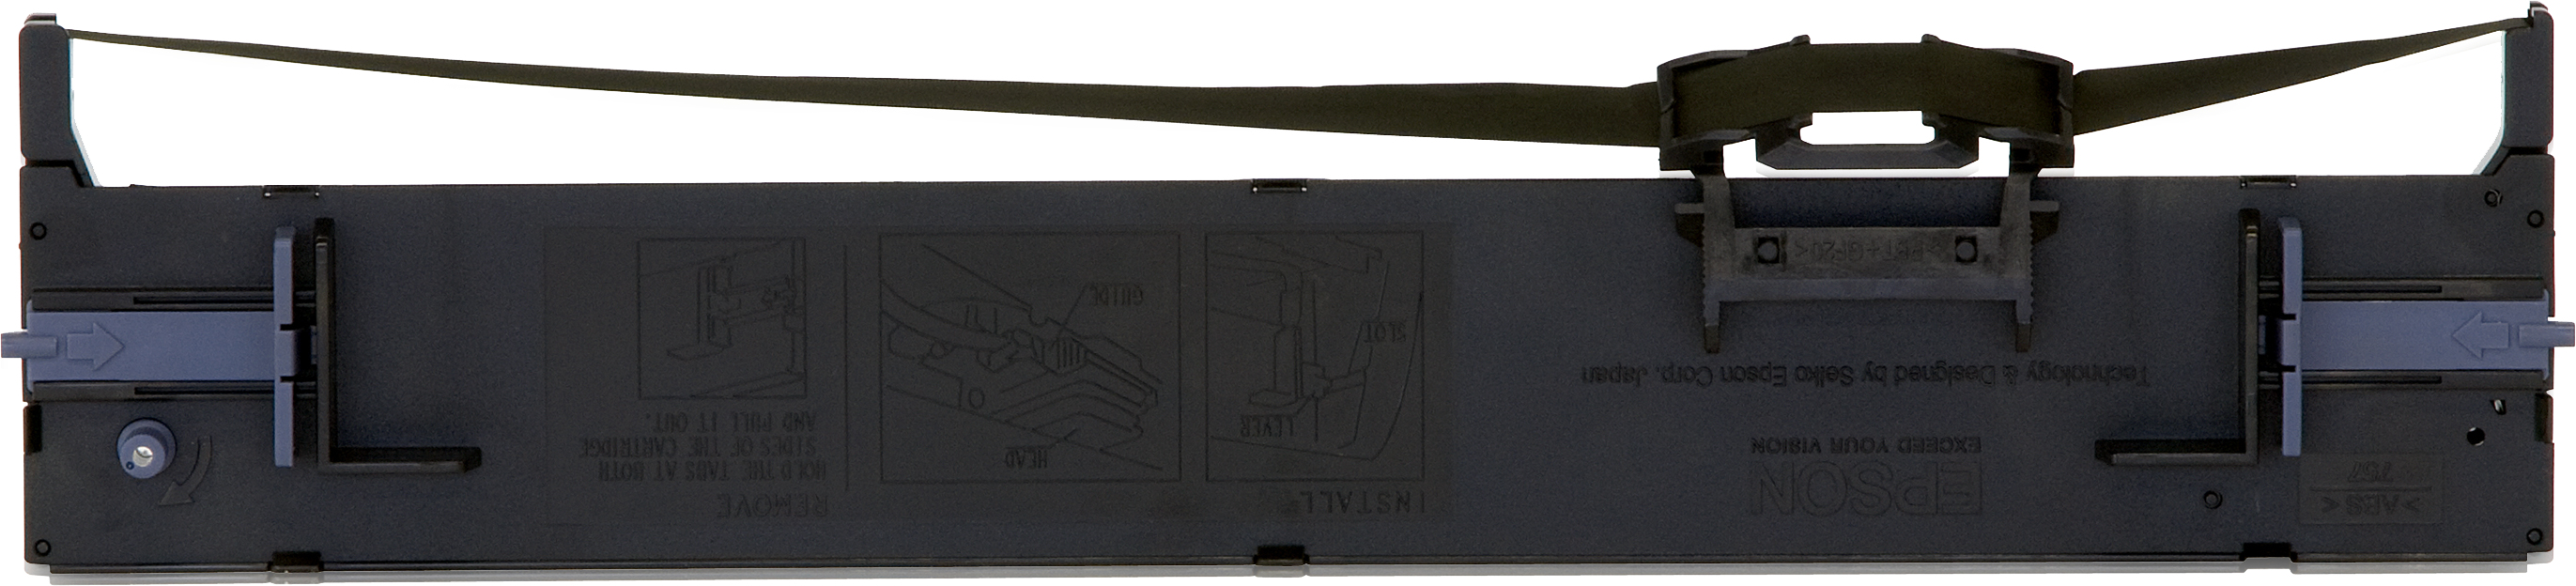 Epson SIDM svart färgbandskassett för LQ-690 (C13S015610)